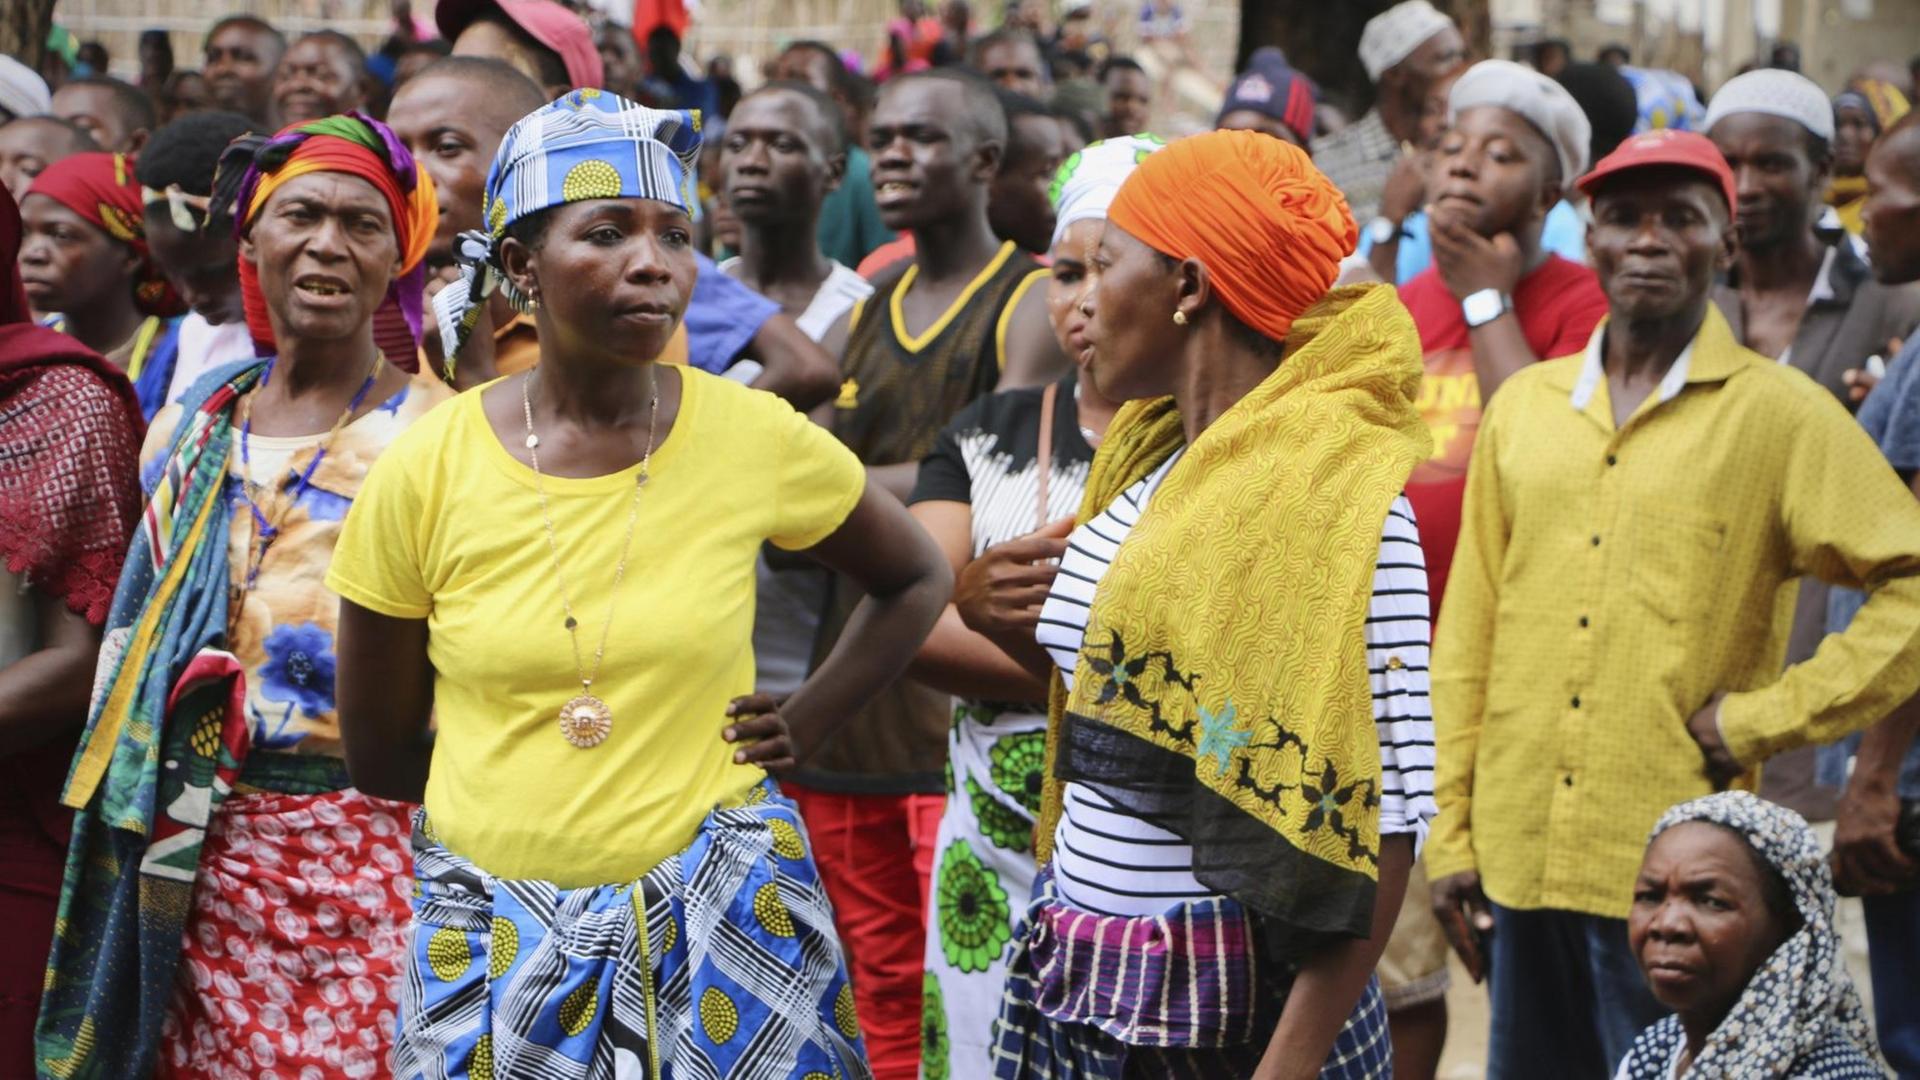 Einwohner der mosambikanischen Stadt Mókimboa da Praia während eines Festes am 7. März 2018